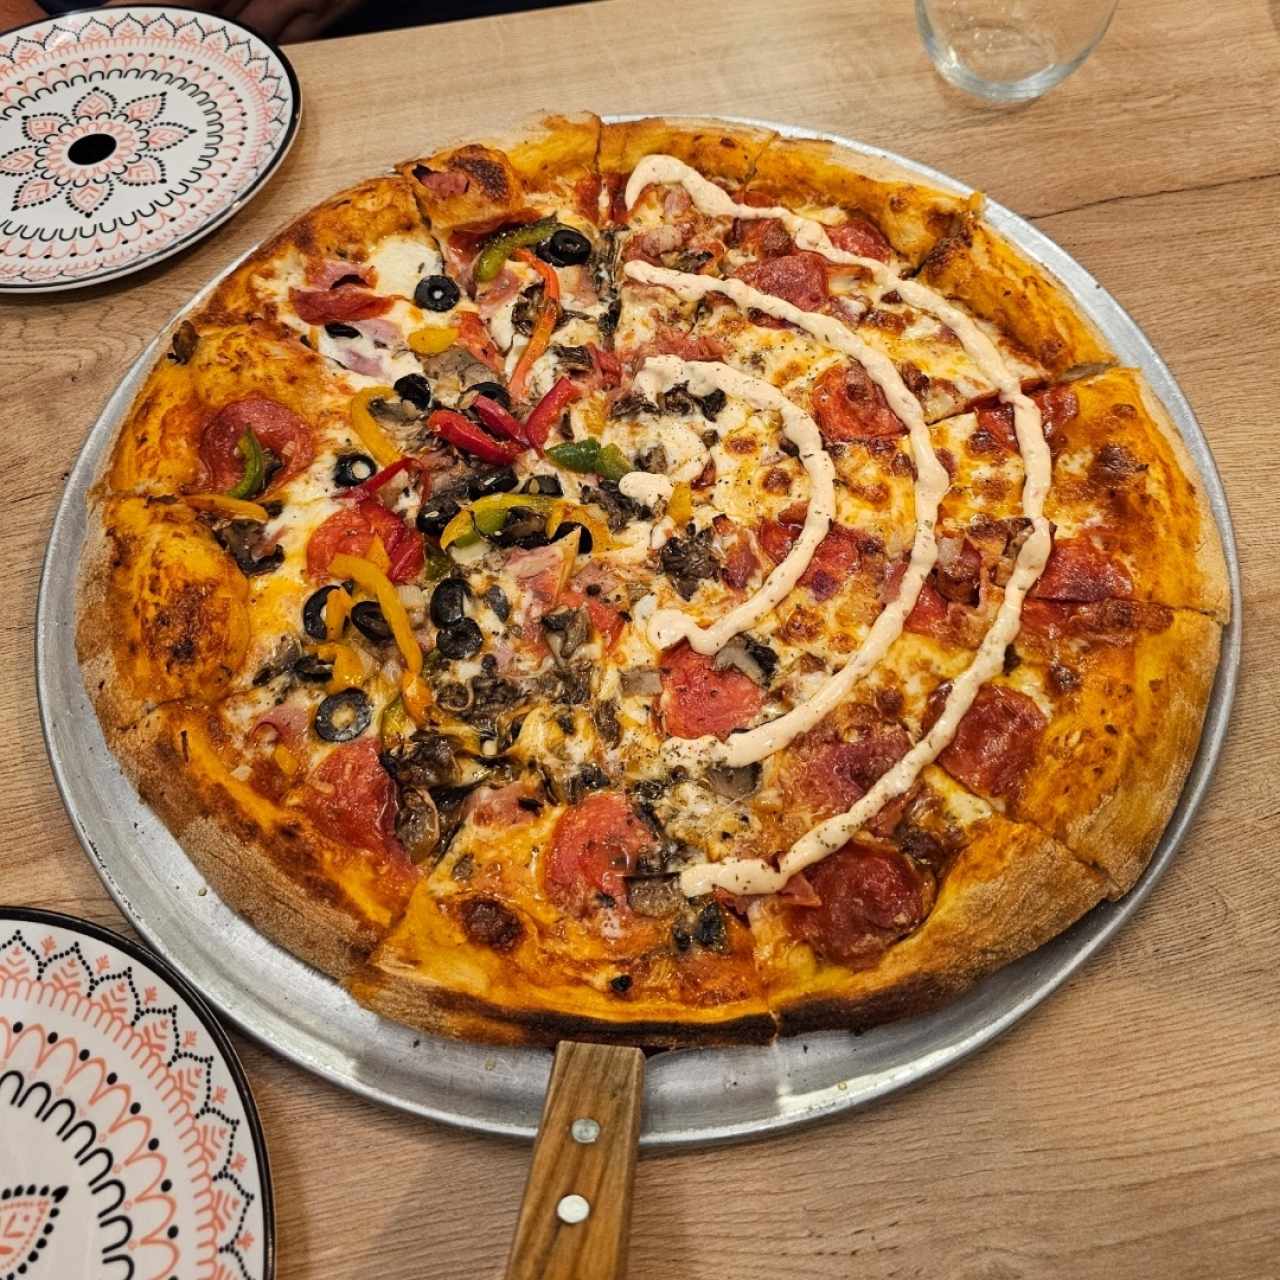 Ordena tu pizza mitad y mitad Combinación & Mafiosa